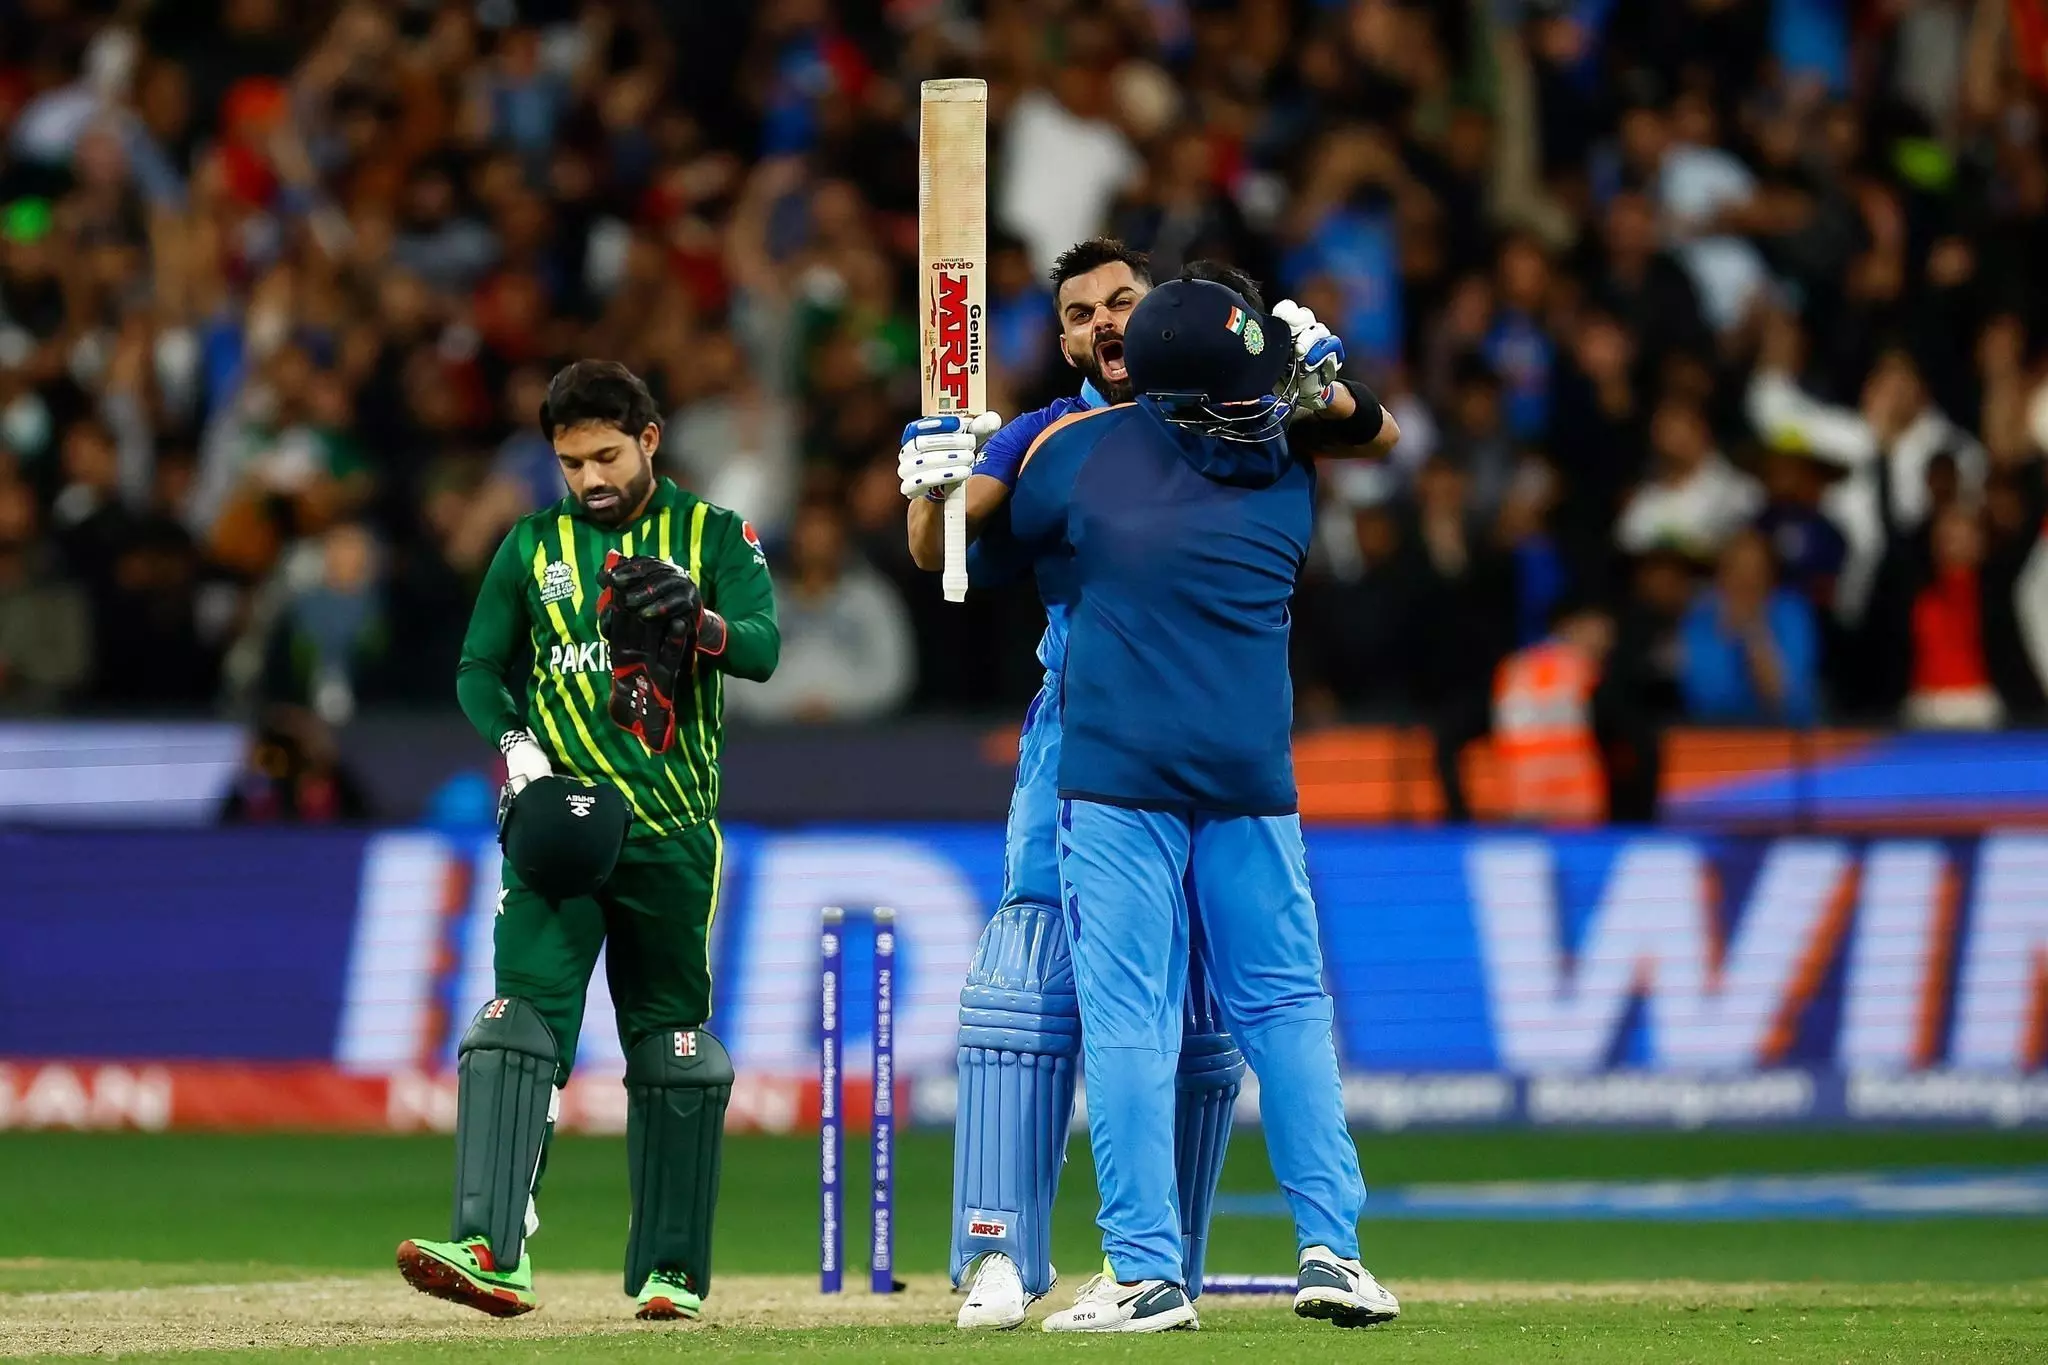 #INDvPAK : भारत-पाकिस्तान मैच का आखिरी ओवर, हर बॉल सांस रोकने वाली, देखिए- वो करिश्माई ओवर